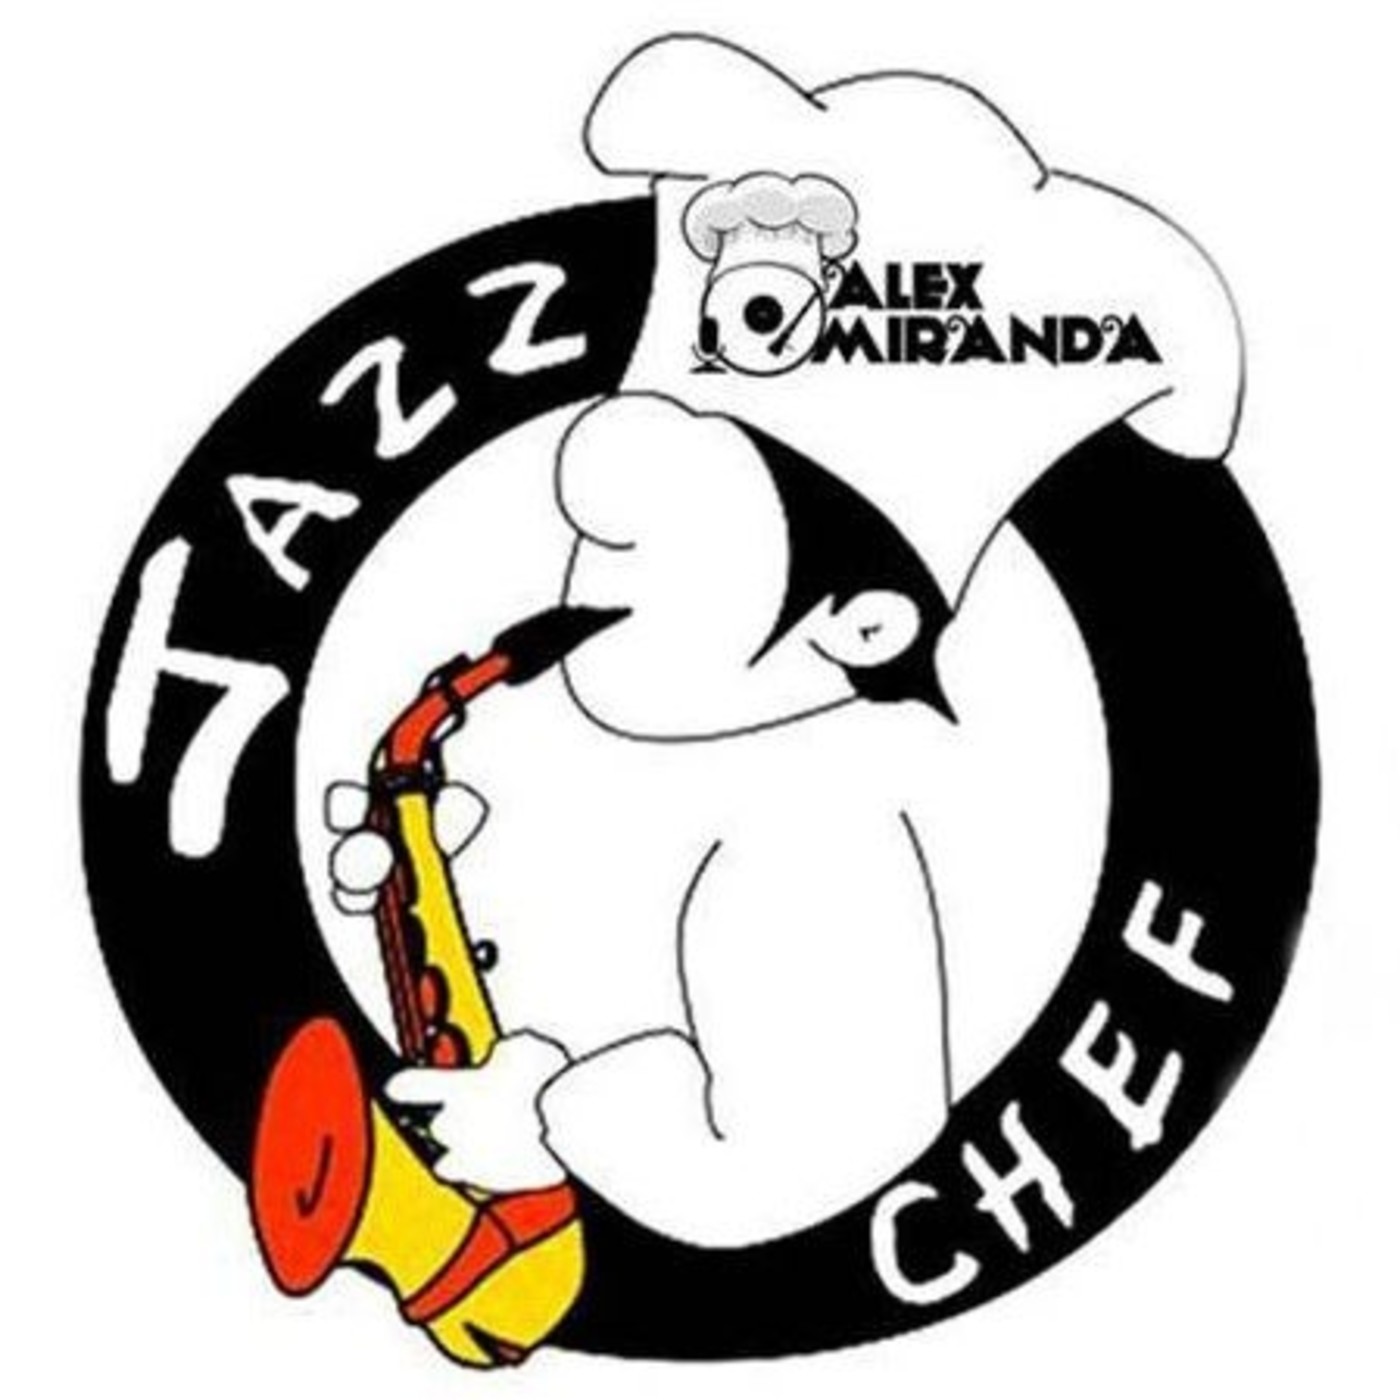 2017/05/27 - A la sazón del Jazz